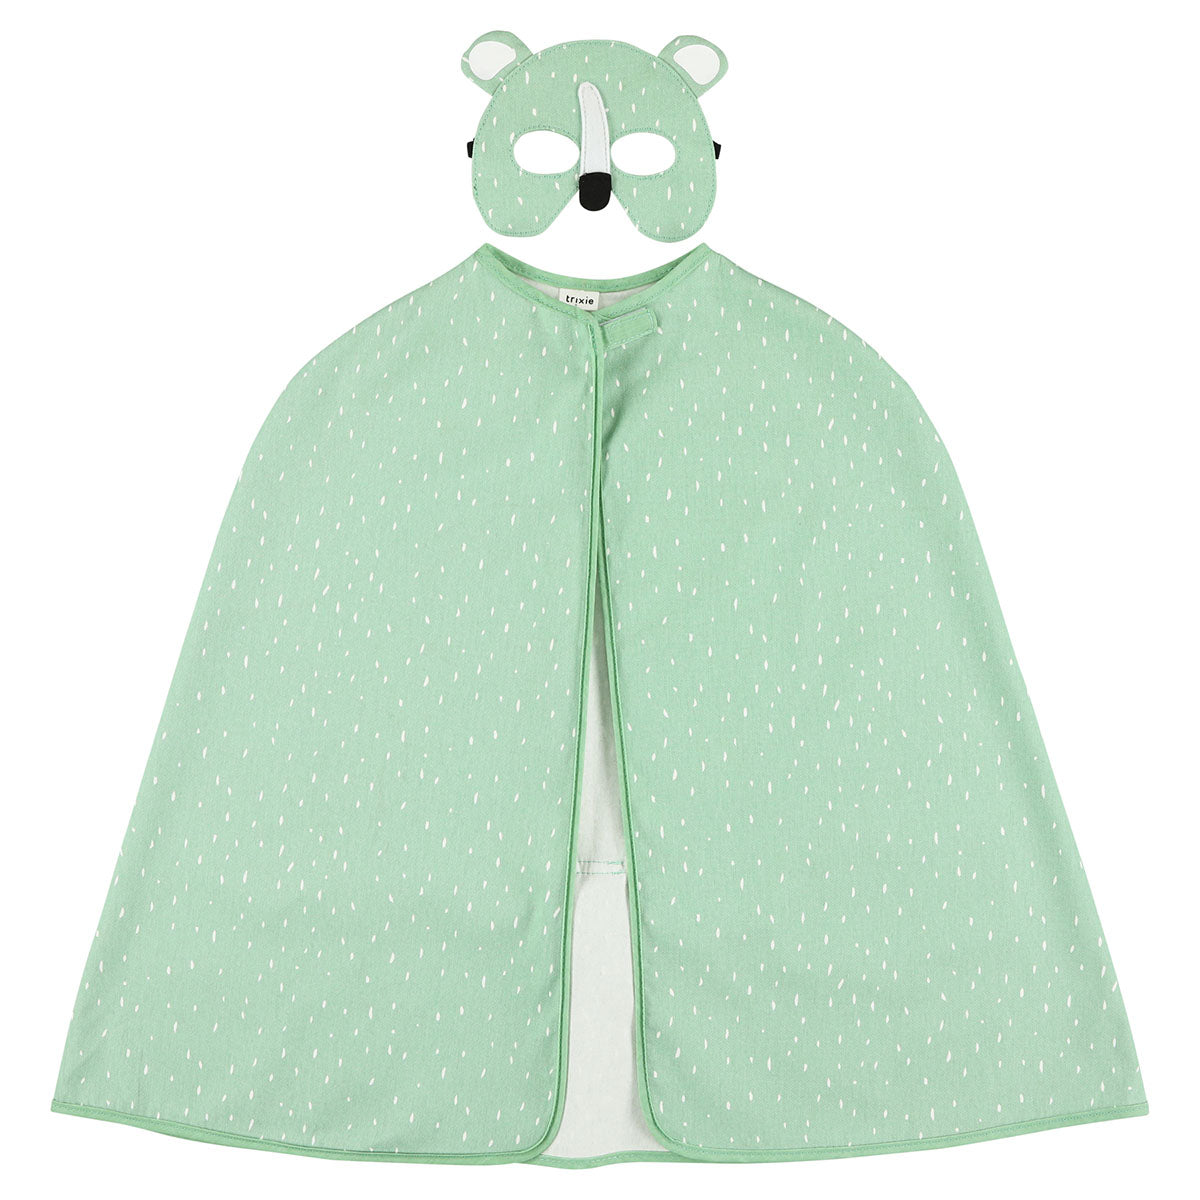 Laat je fantasie de vrije loop met de Trixie Mr. Polar Bear cape en masker! Deze betoverende verkleedset transformeert jou in een stoere ijsbeer, compleet met een speels staartje. VanZus.